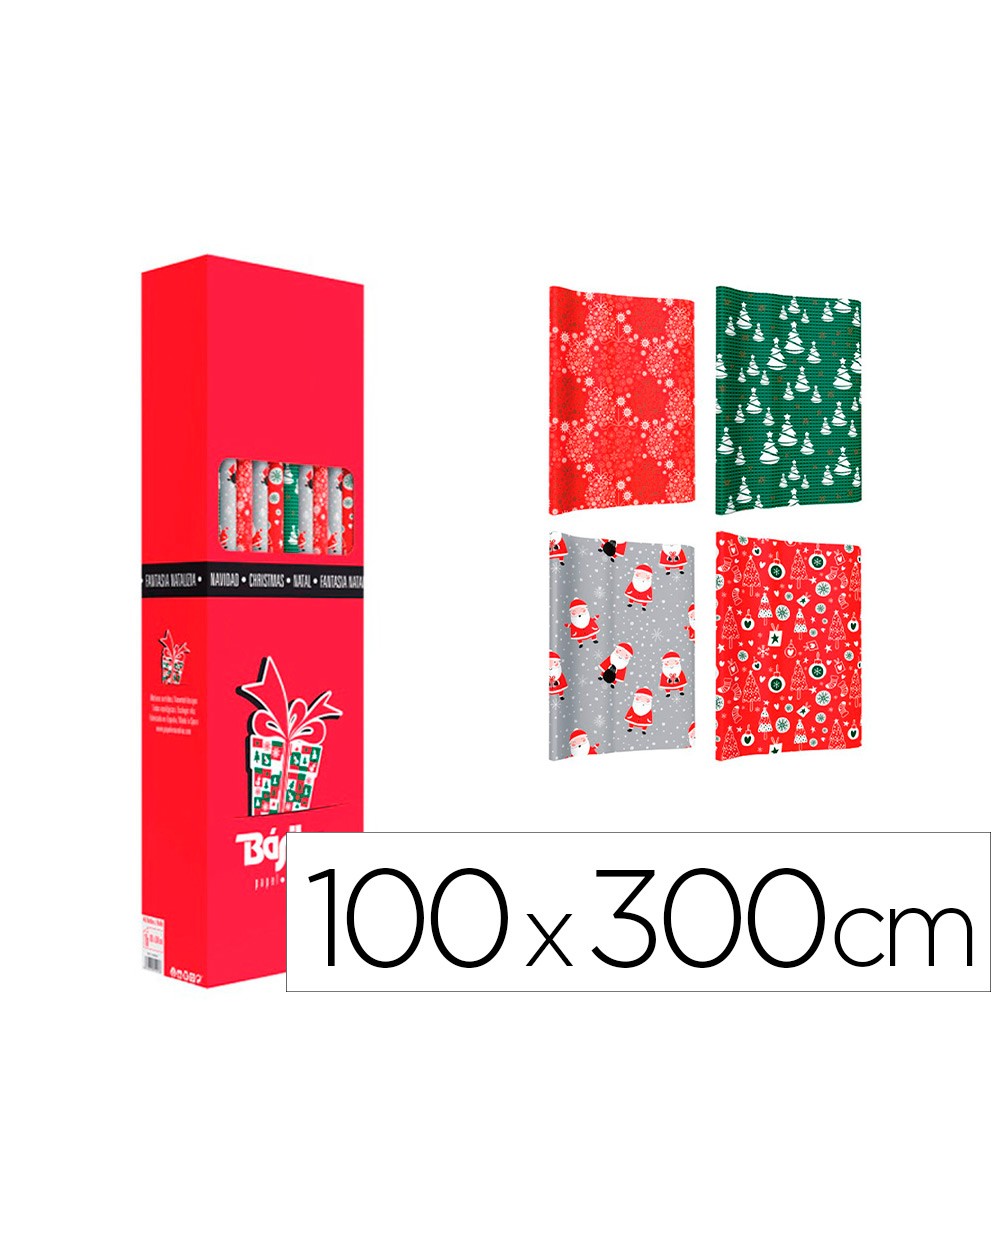 Papel de regalo basika navidad rollo de 100 x 300 cm modelos surtidos